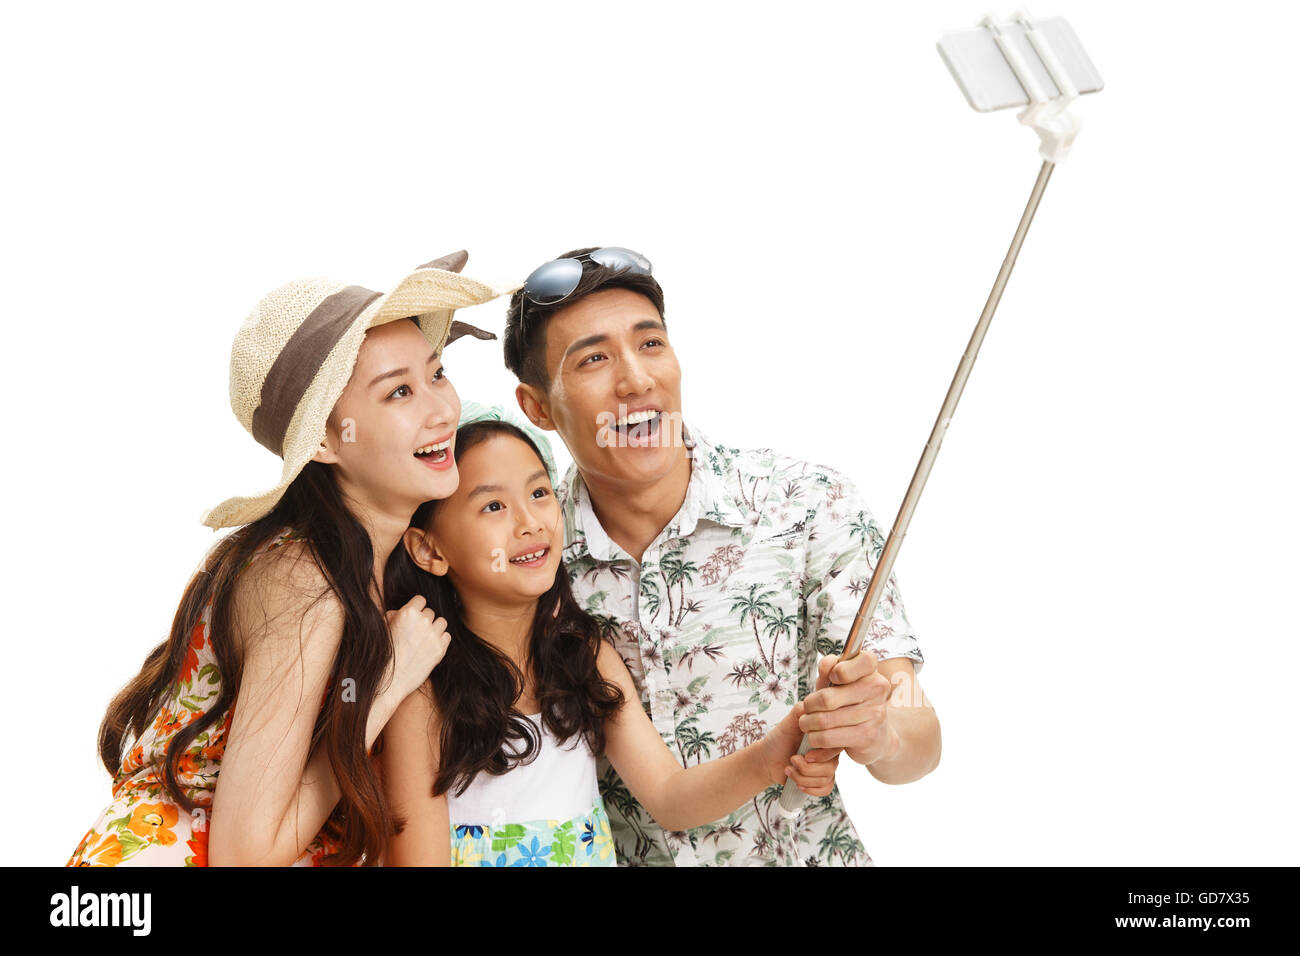 Le bonheur d'une famille de trois personnes avec un téléphone mobile retardateur Banque D'Images